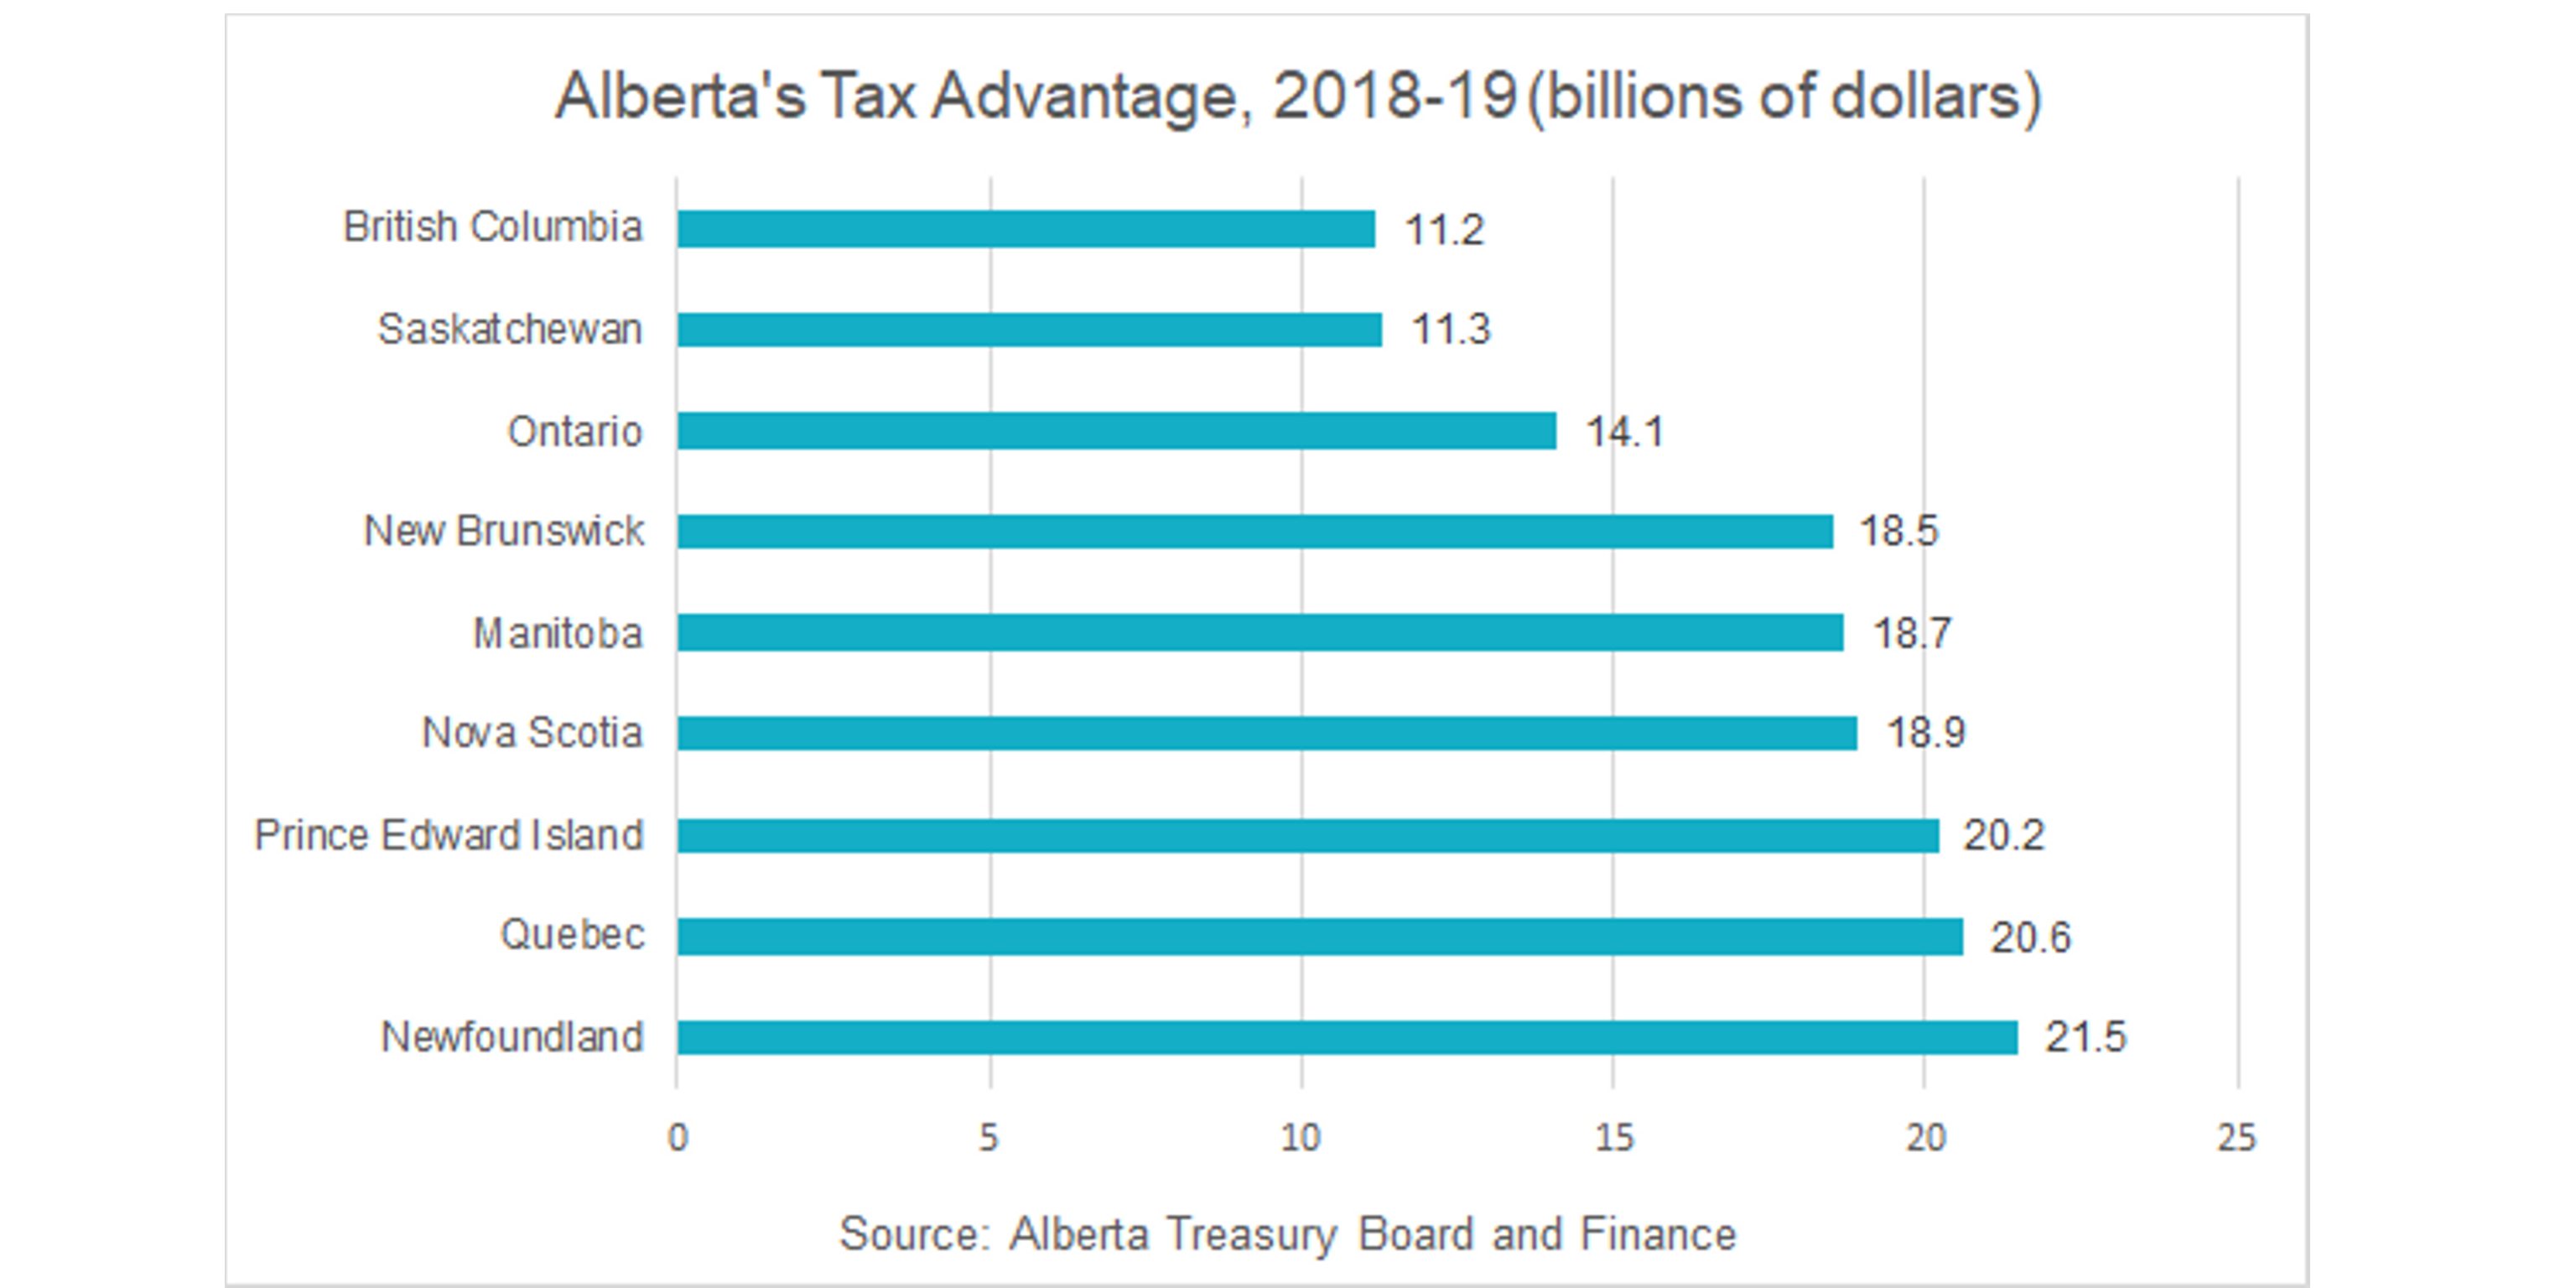 10 Alberta's tax advantage